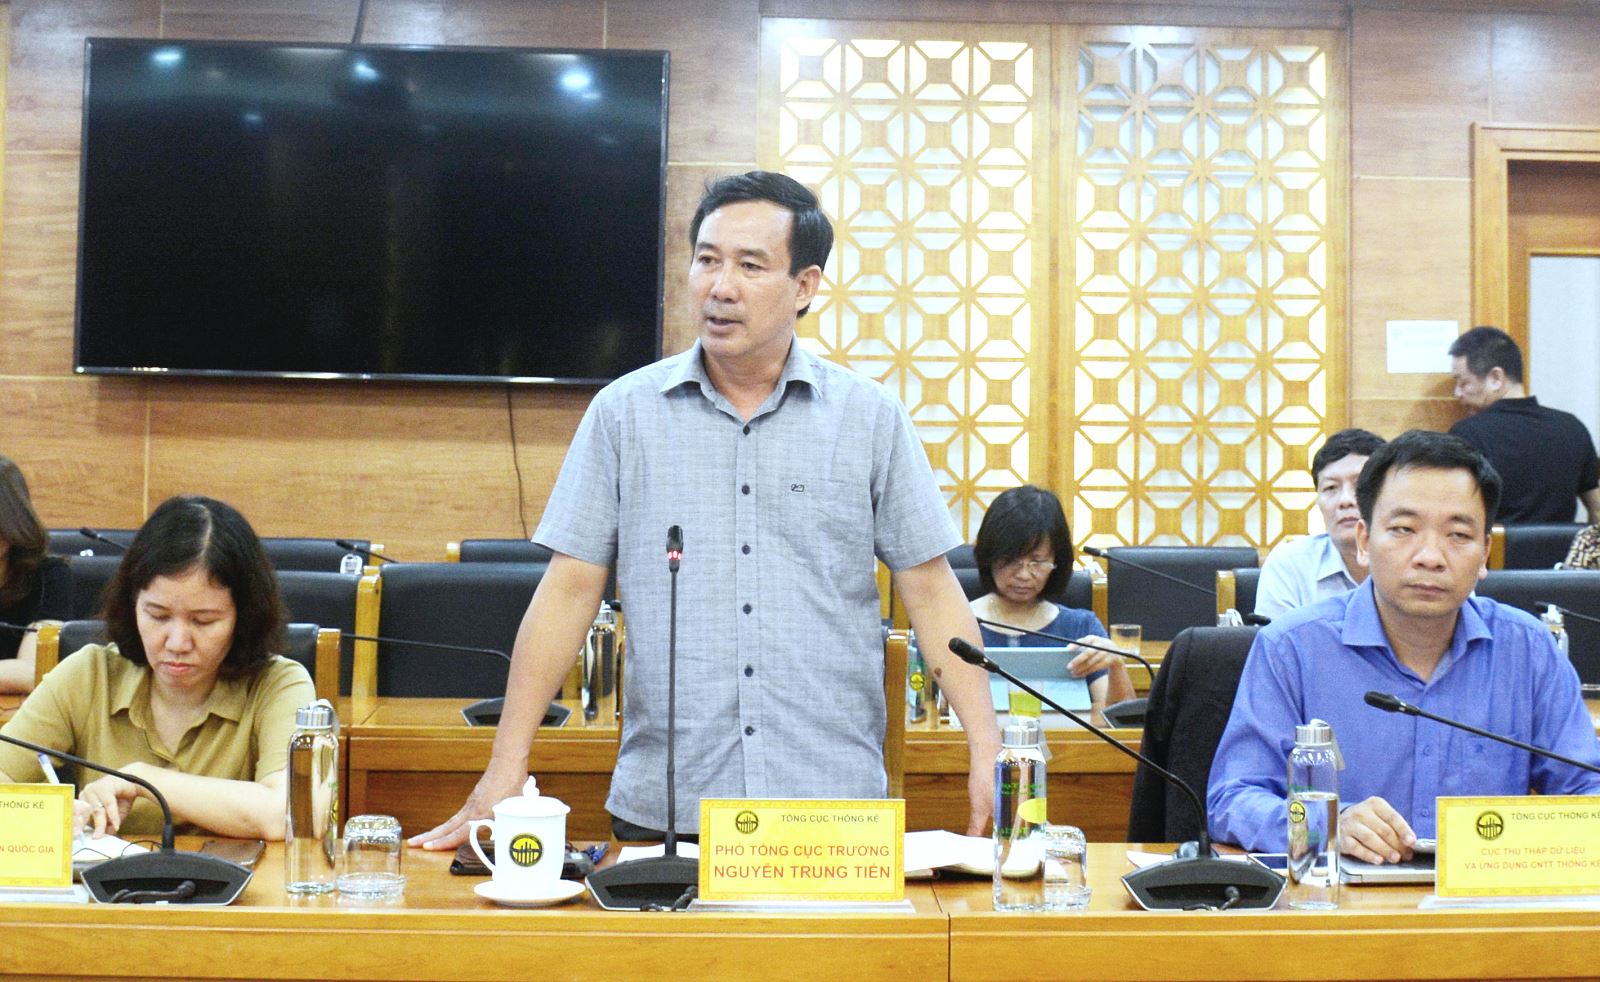 Phó Tổng cục trưởng Nguyễn Trung Tiến phát biểu chỉ đạo tại buổi làm việc